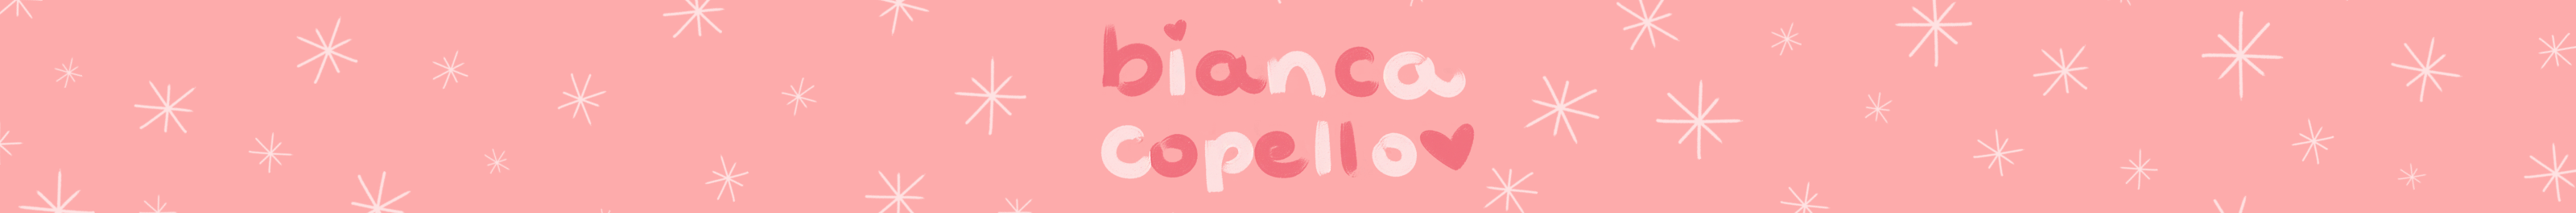 Bianca Copello's profile banner